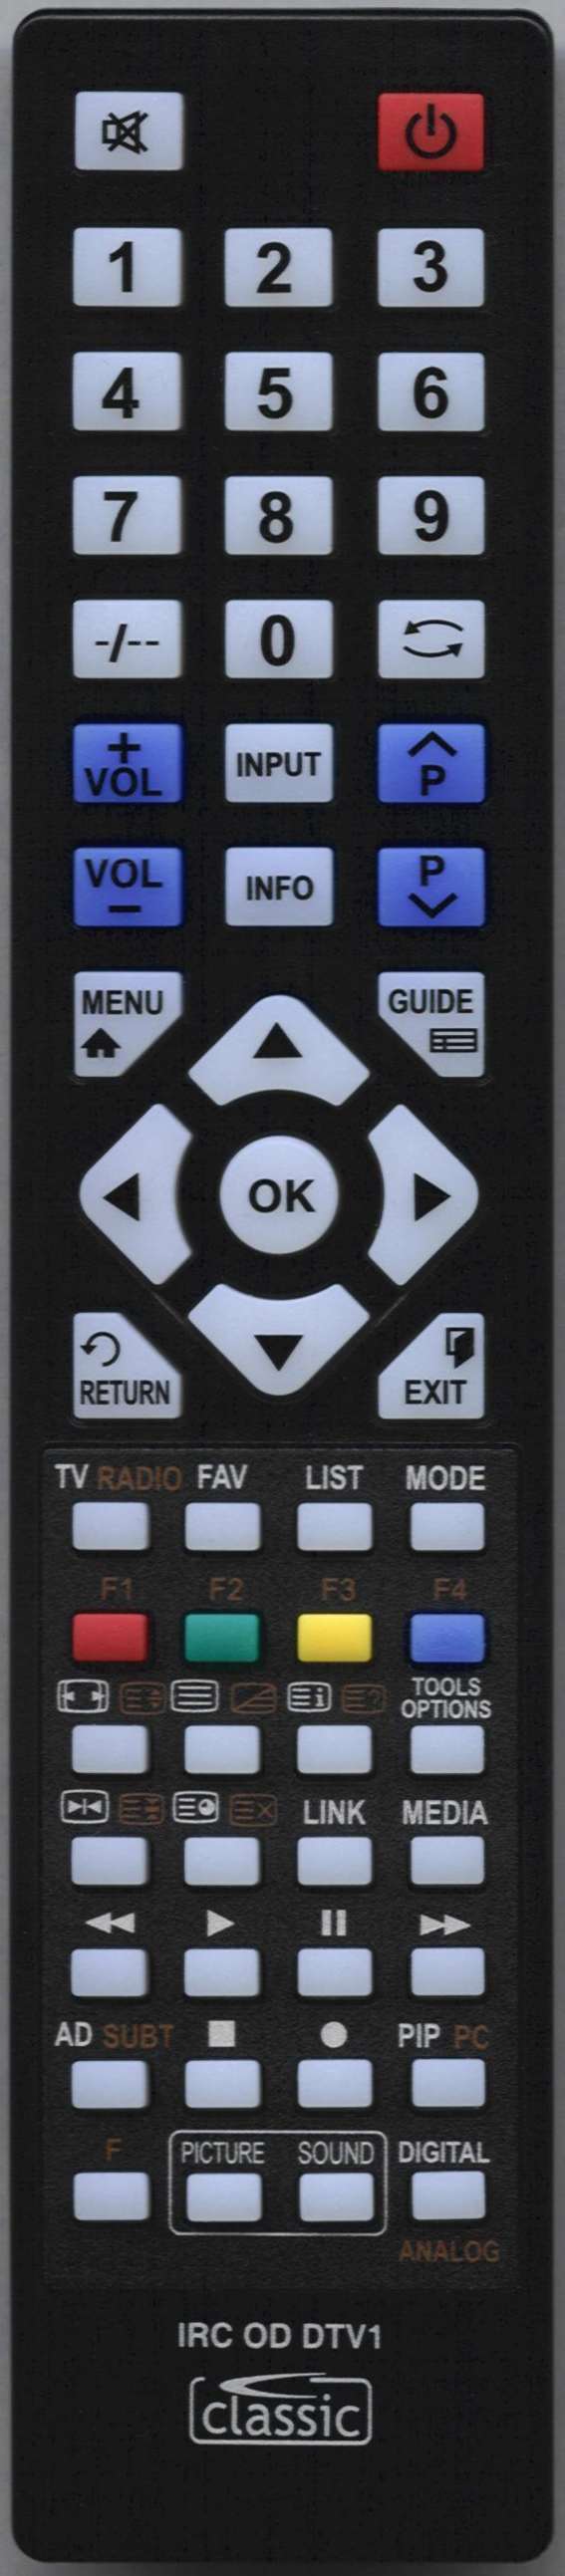 ORION 3130 108 21211 Remote Control Alternative